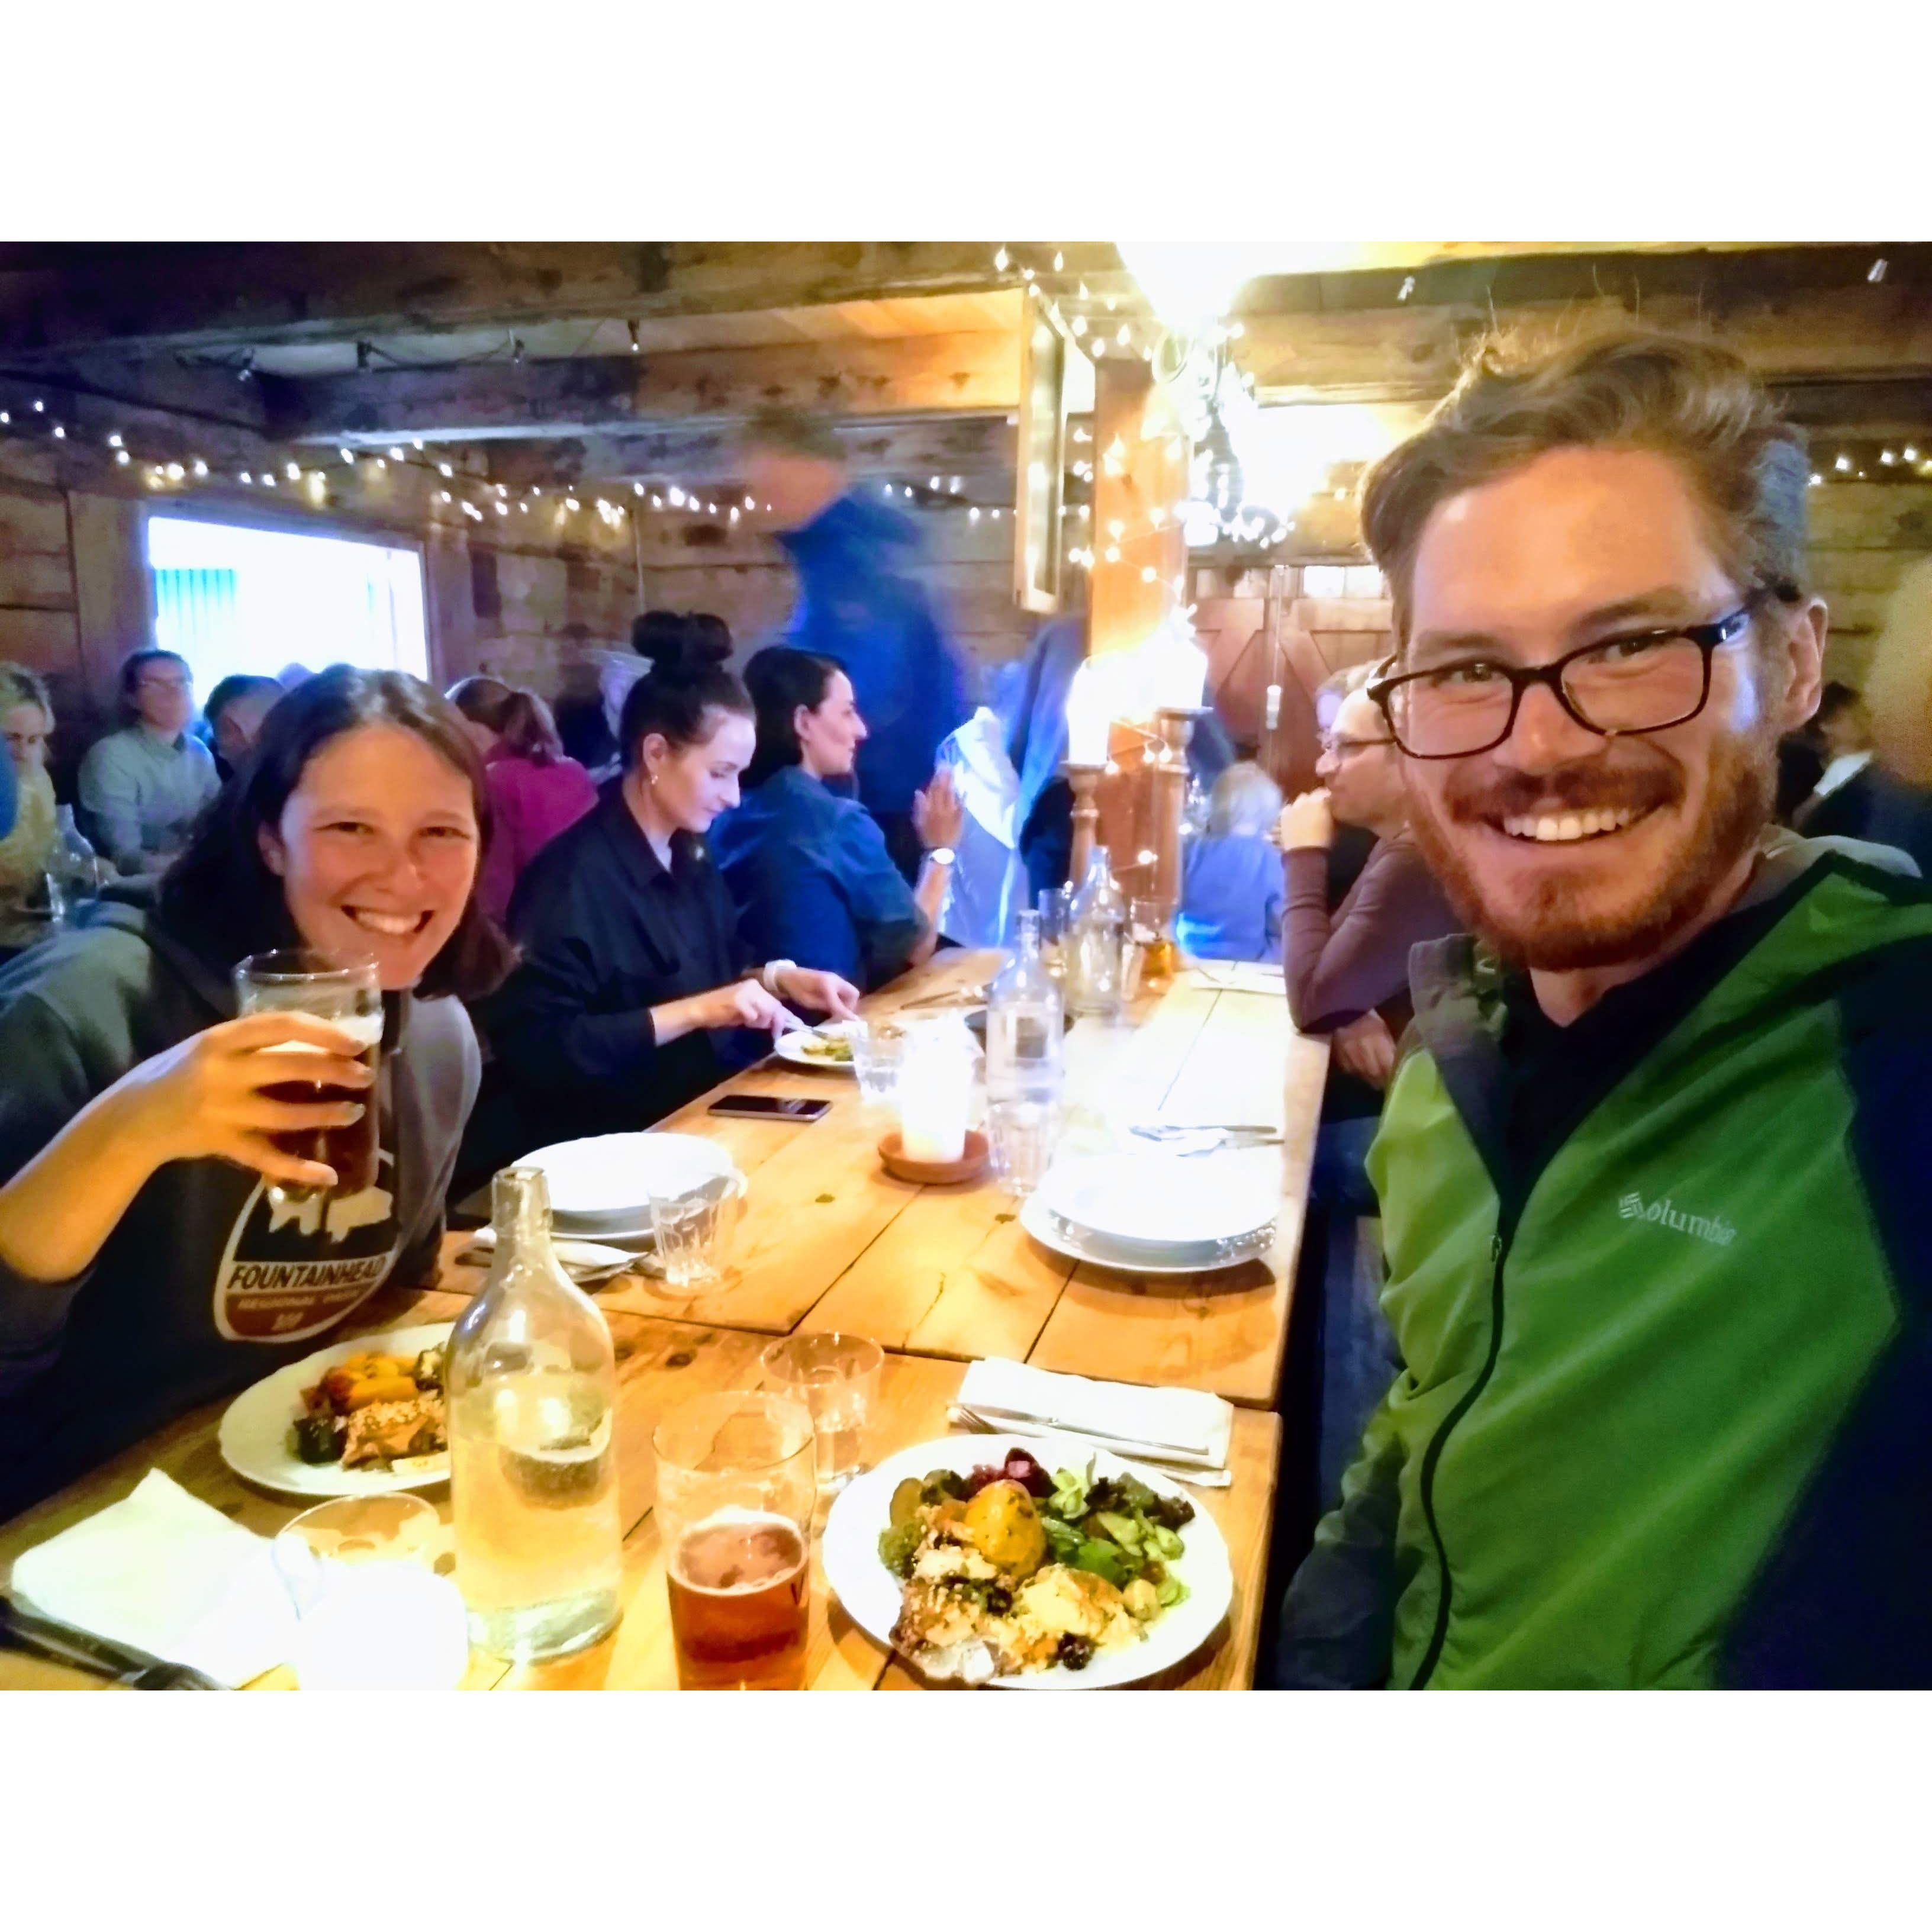 Dinner at Tjorhusid, Isafjordur, Iceland...proof of Josh eating fish!